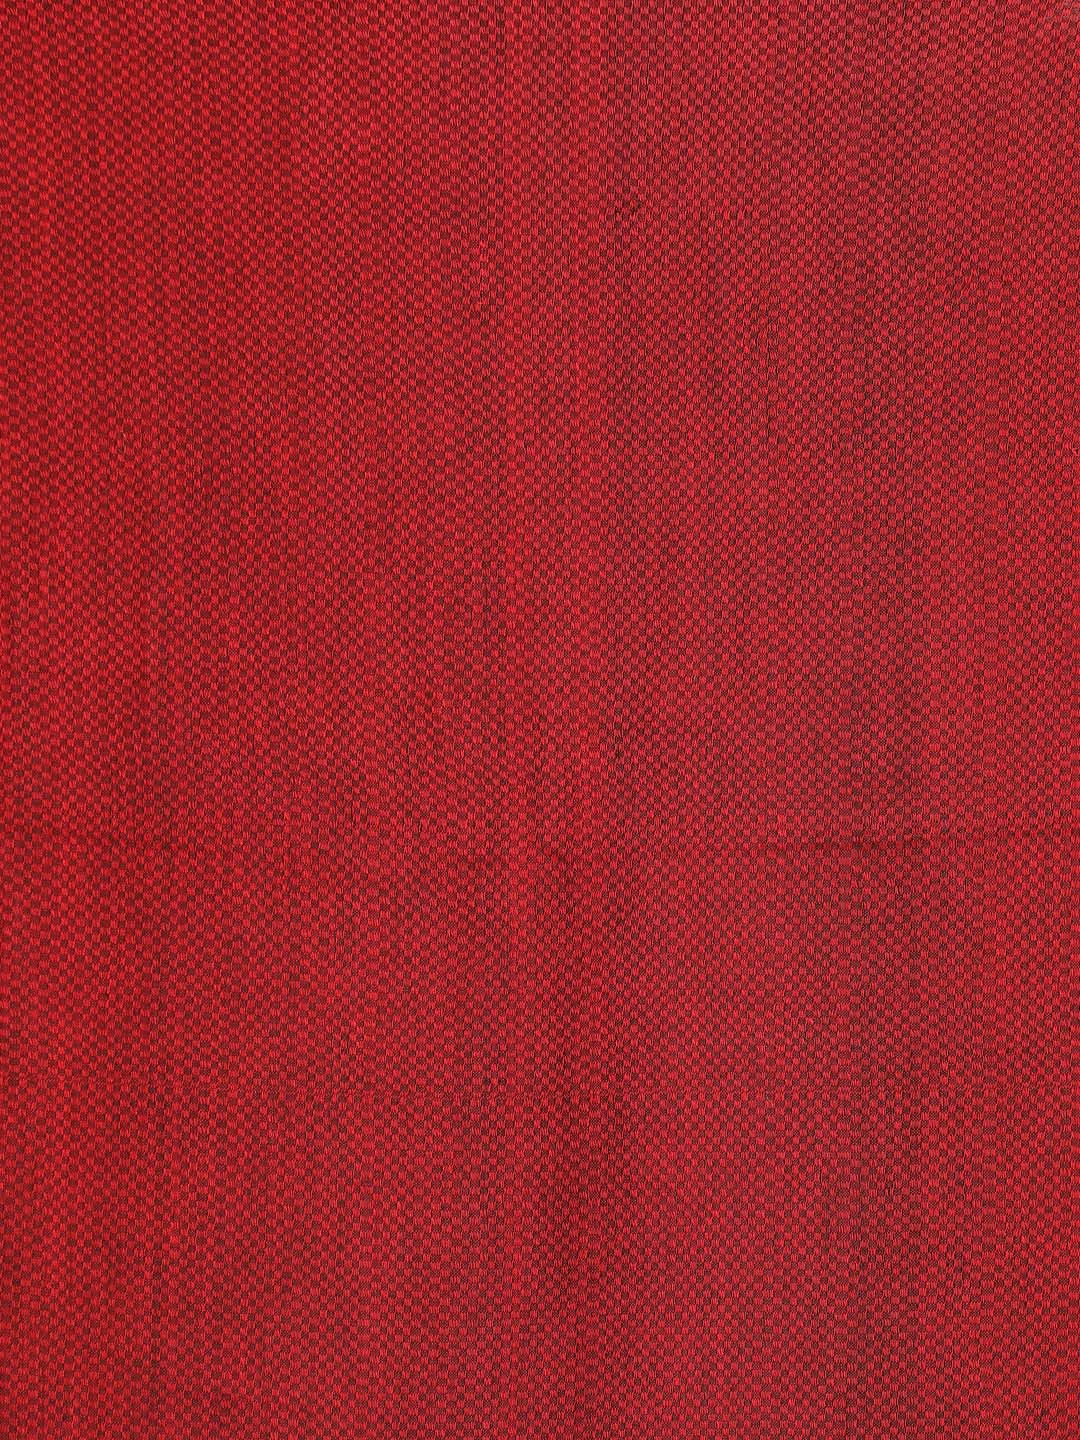 Indethnic Red Bengal Handloom Pure Cotton Saree Party Saree - Saree Detail View